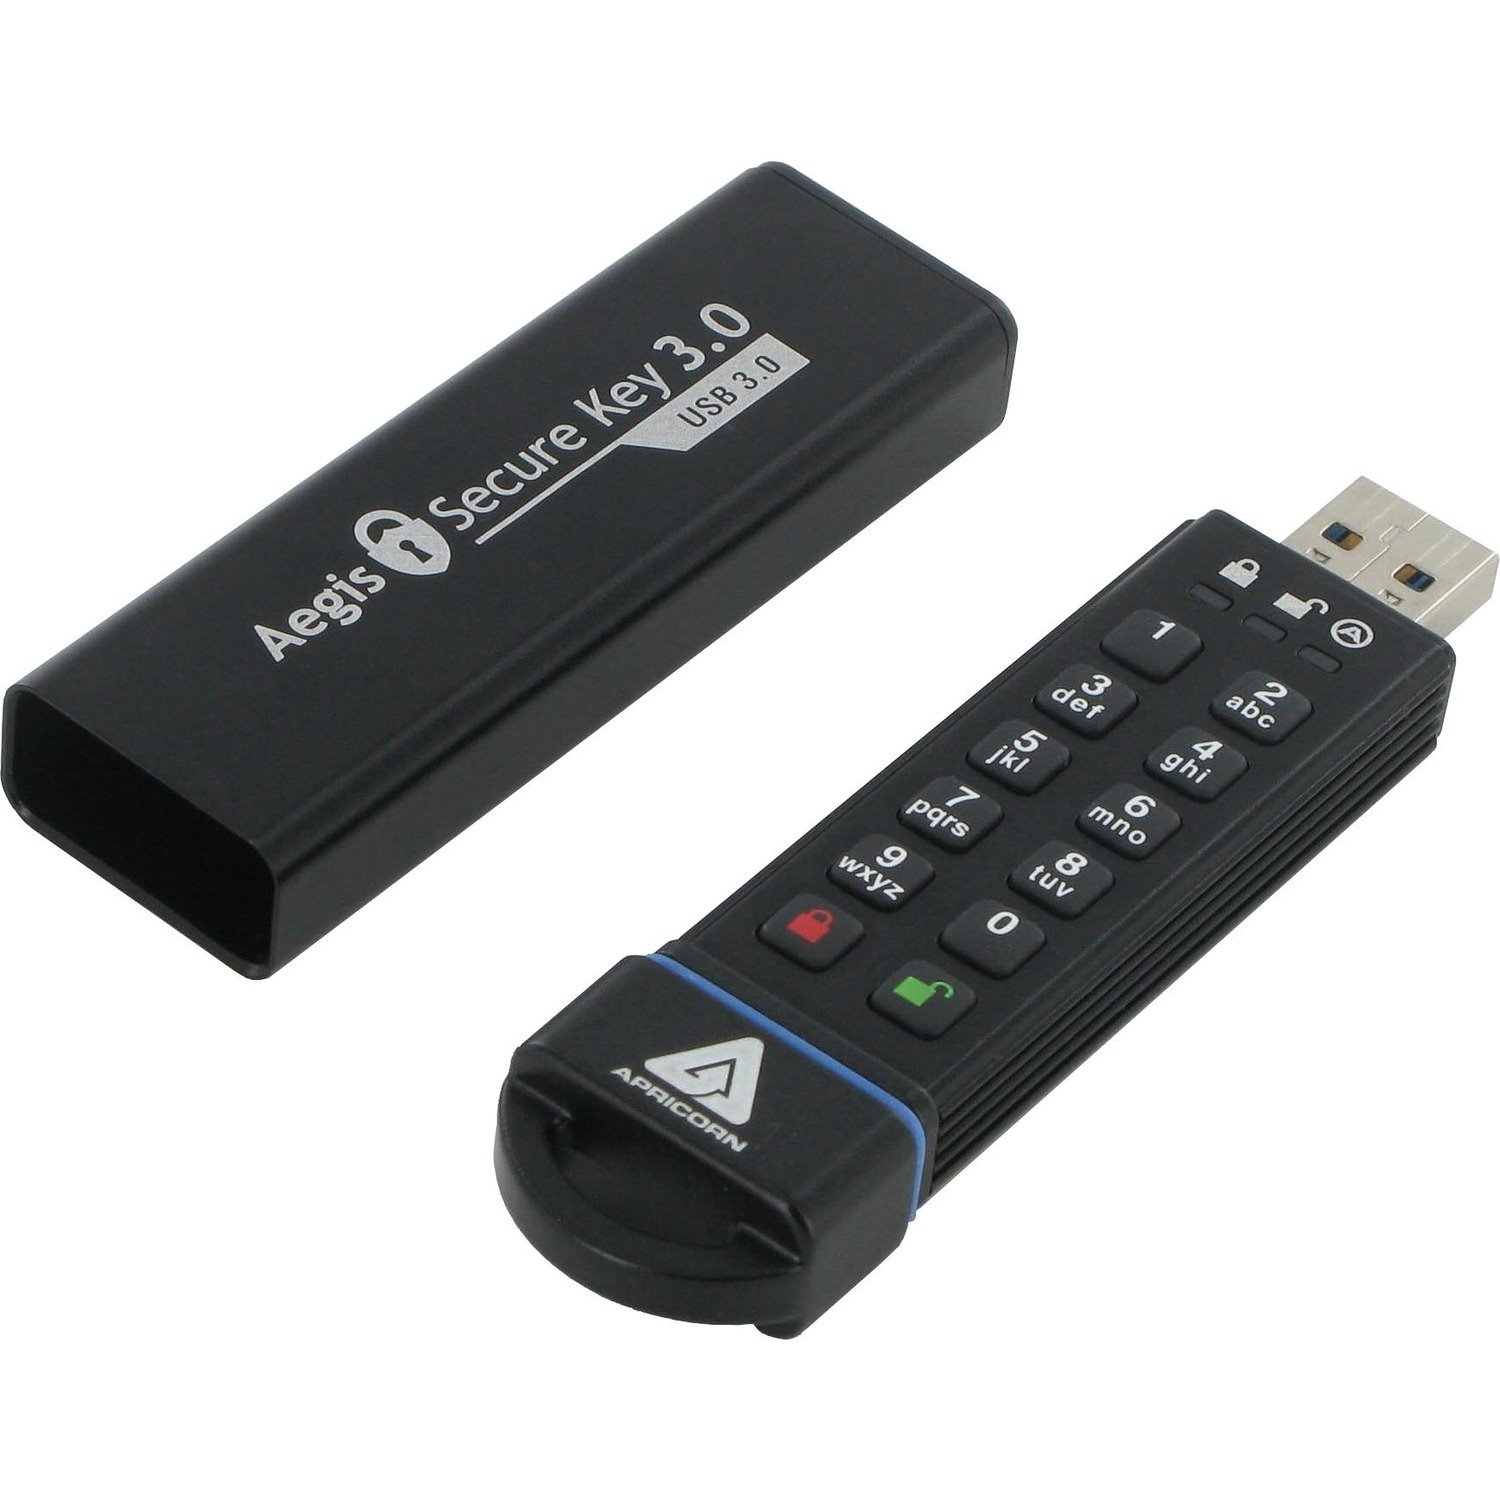 Apricorn Aegis Secure Key 3.0 120 GB USB 3.0 Flash Drive - 256-bit AES - TAA Compliant